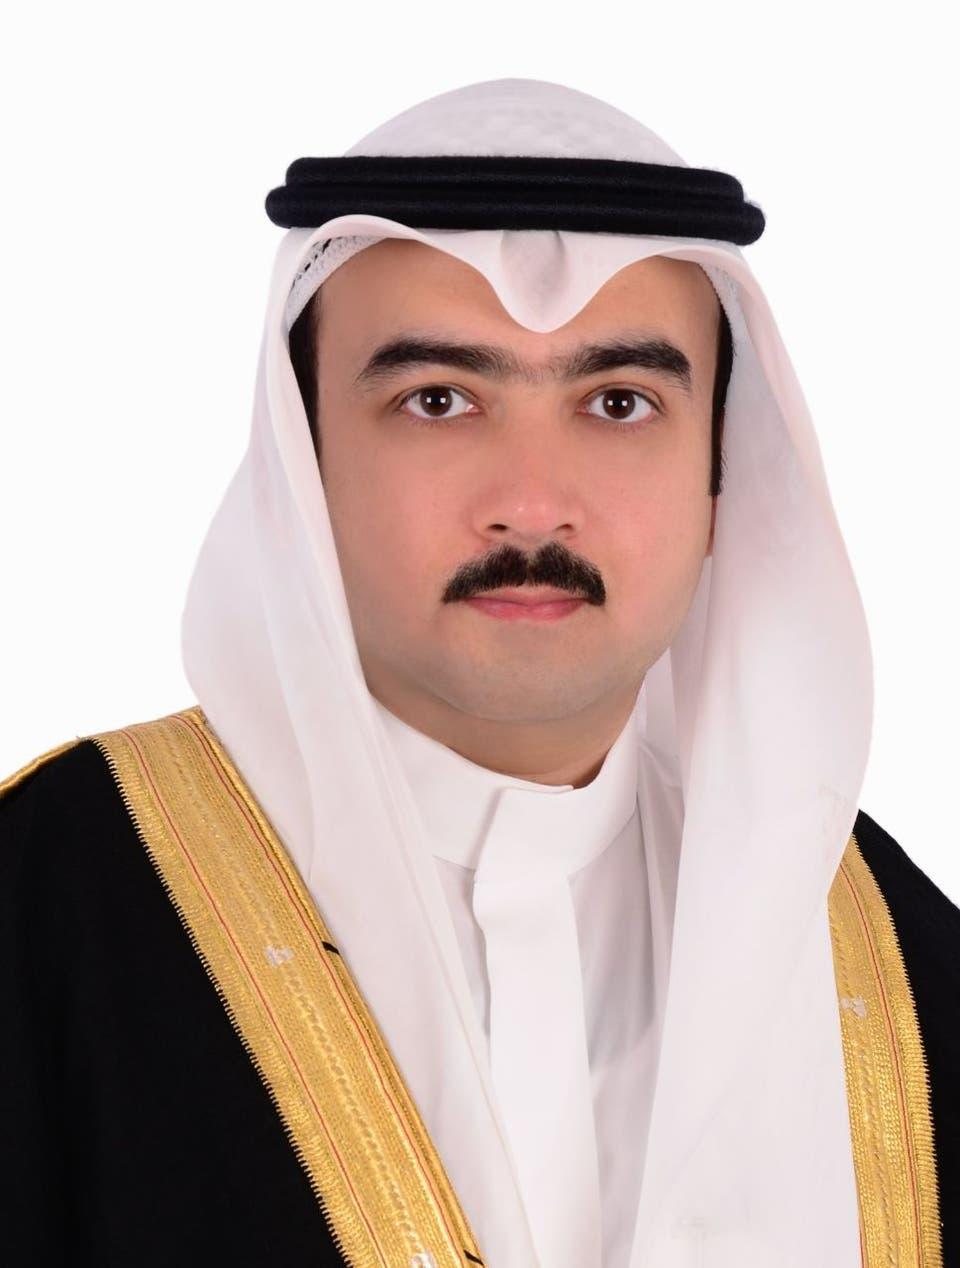   بروفيسور سعودي يسجل براءة اختراع عالمية في الجراحة